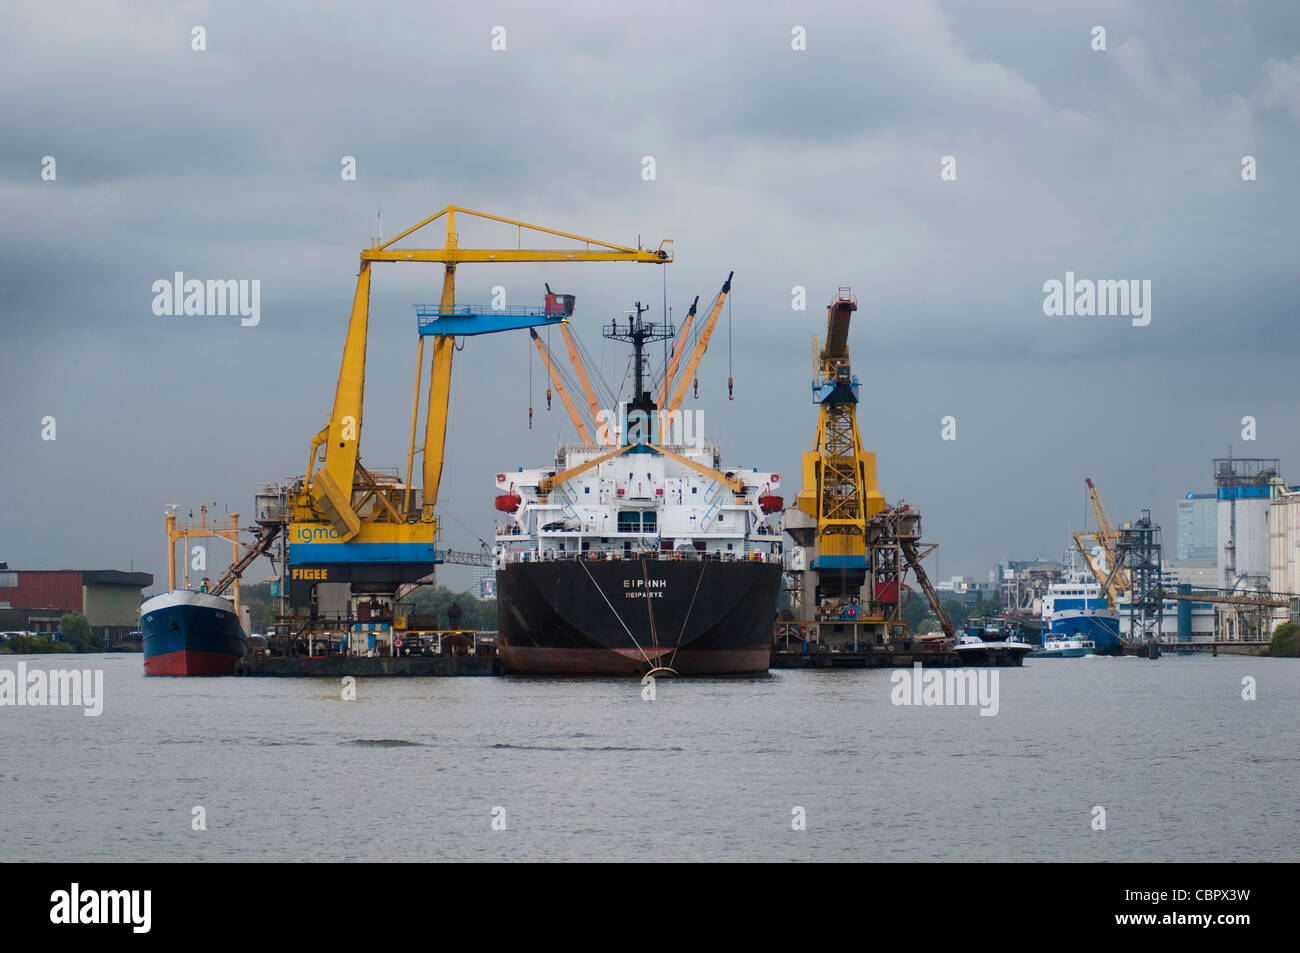 Transférer dans le port d'Amsterdam, des grues, de la productivité, de l'économie Banque D'Images